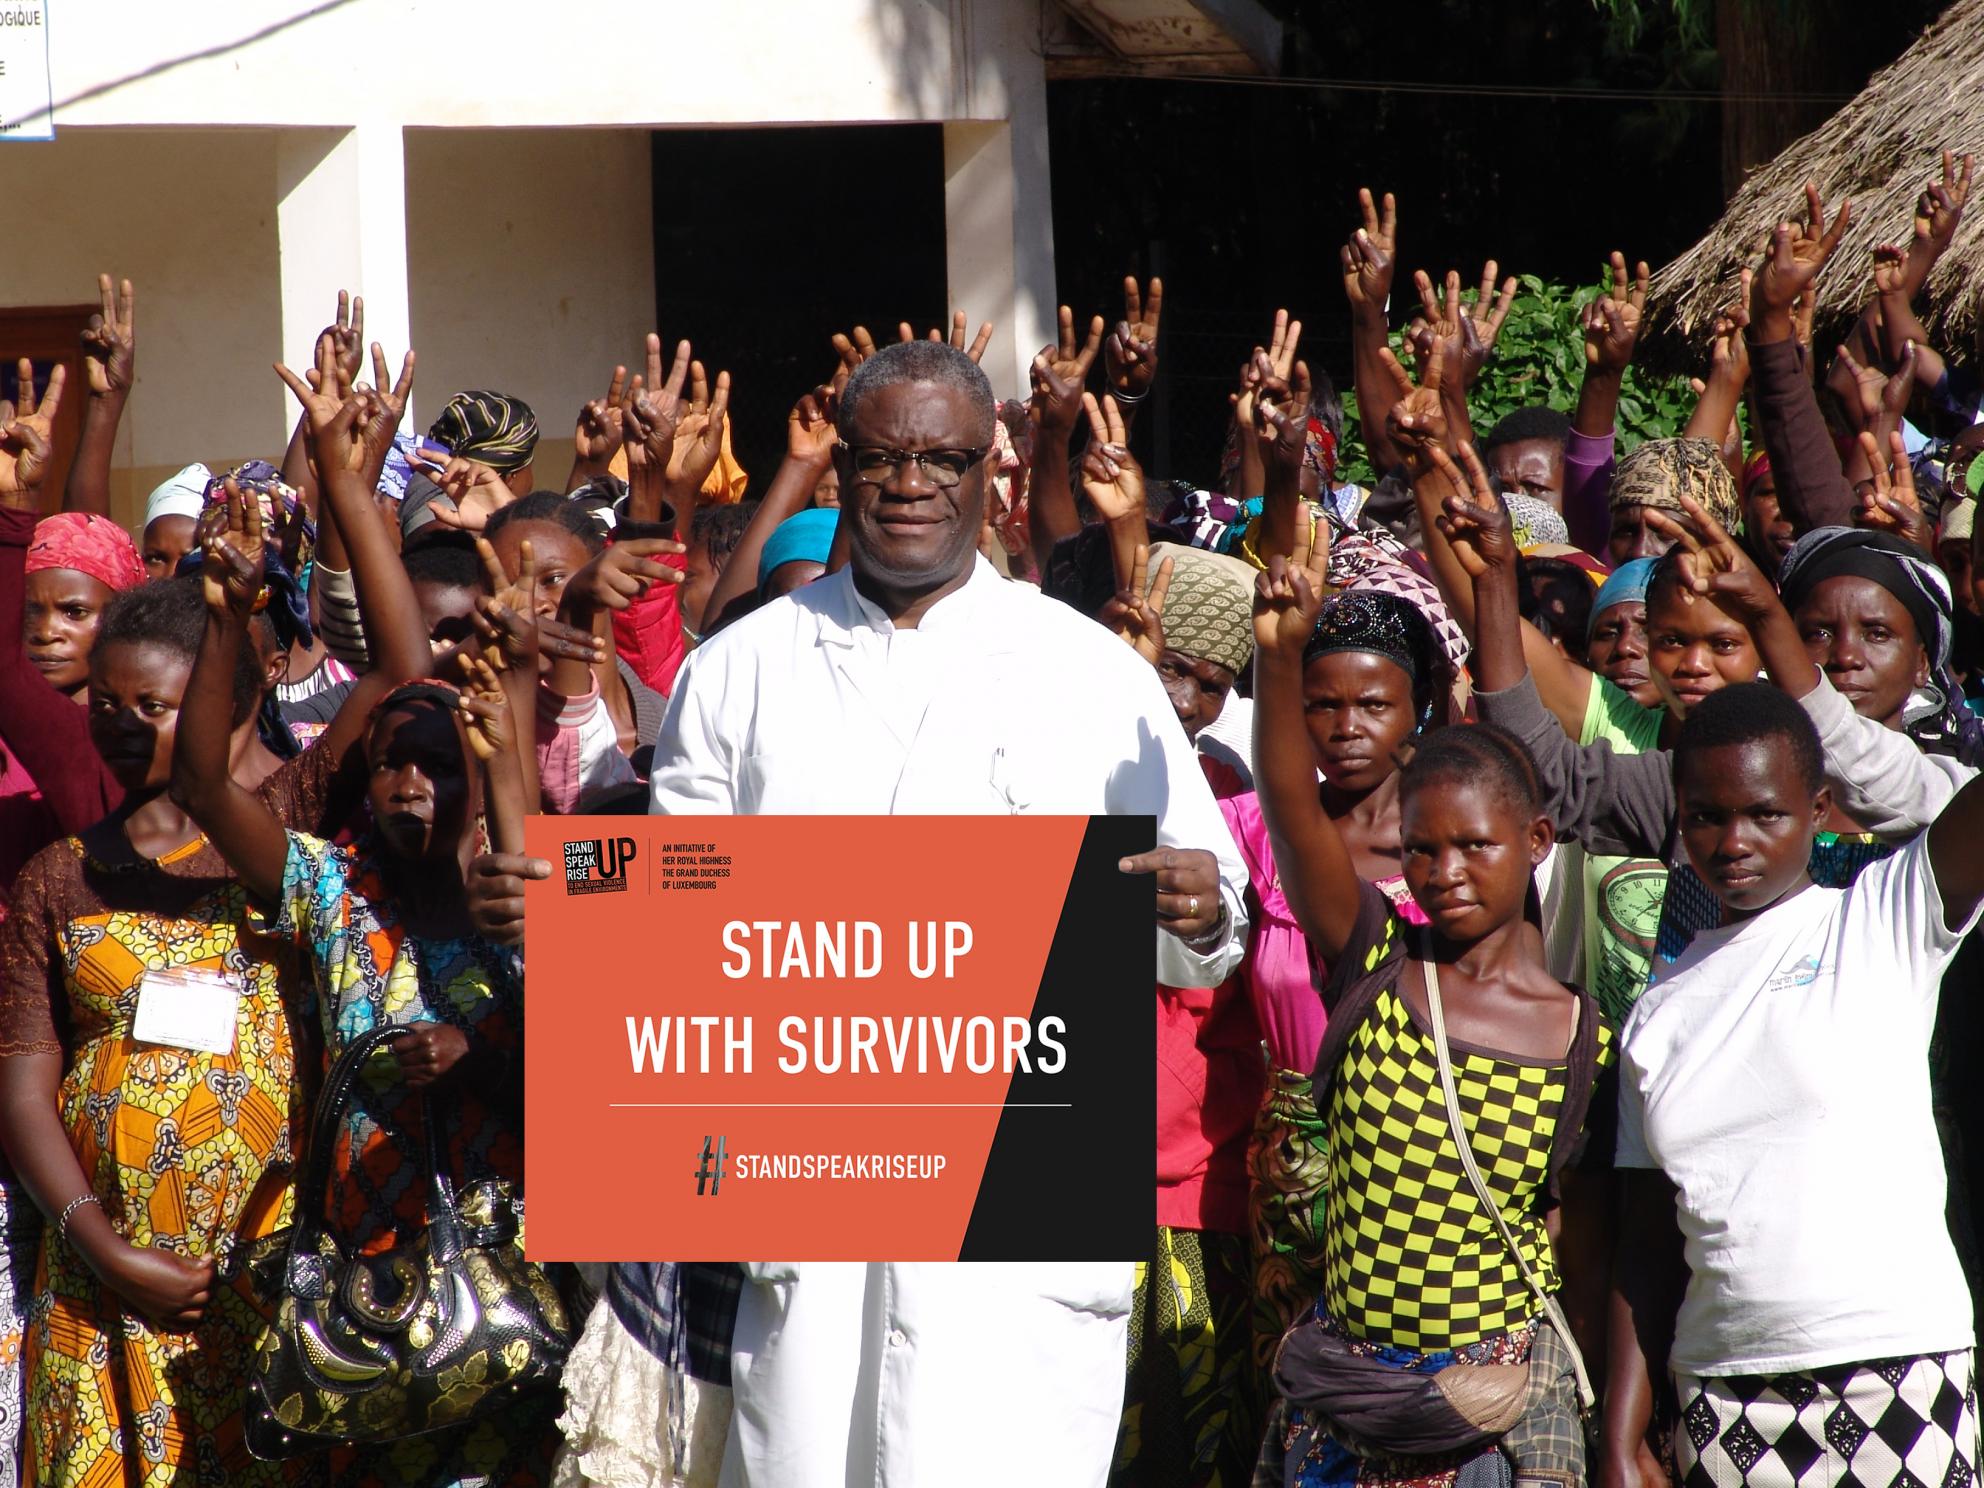 Dr. Denis Mukwege - Stand Up with Survivors